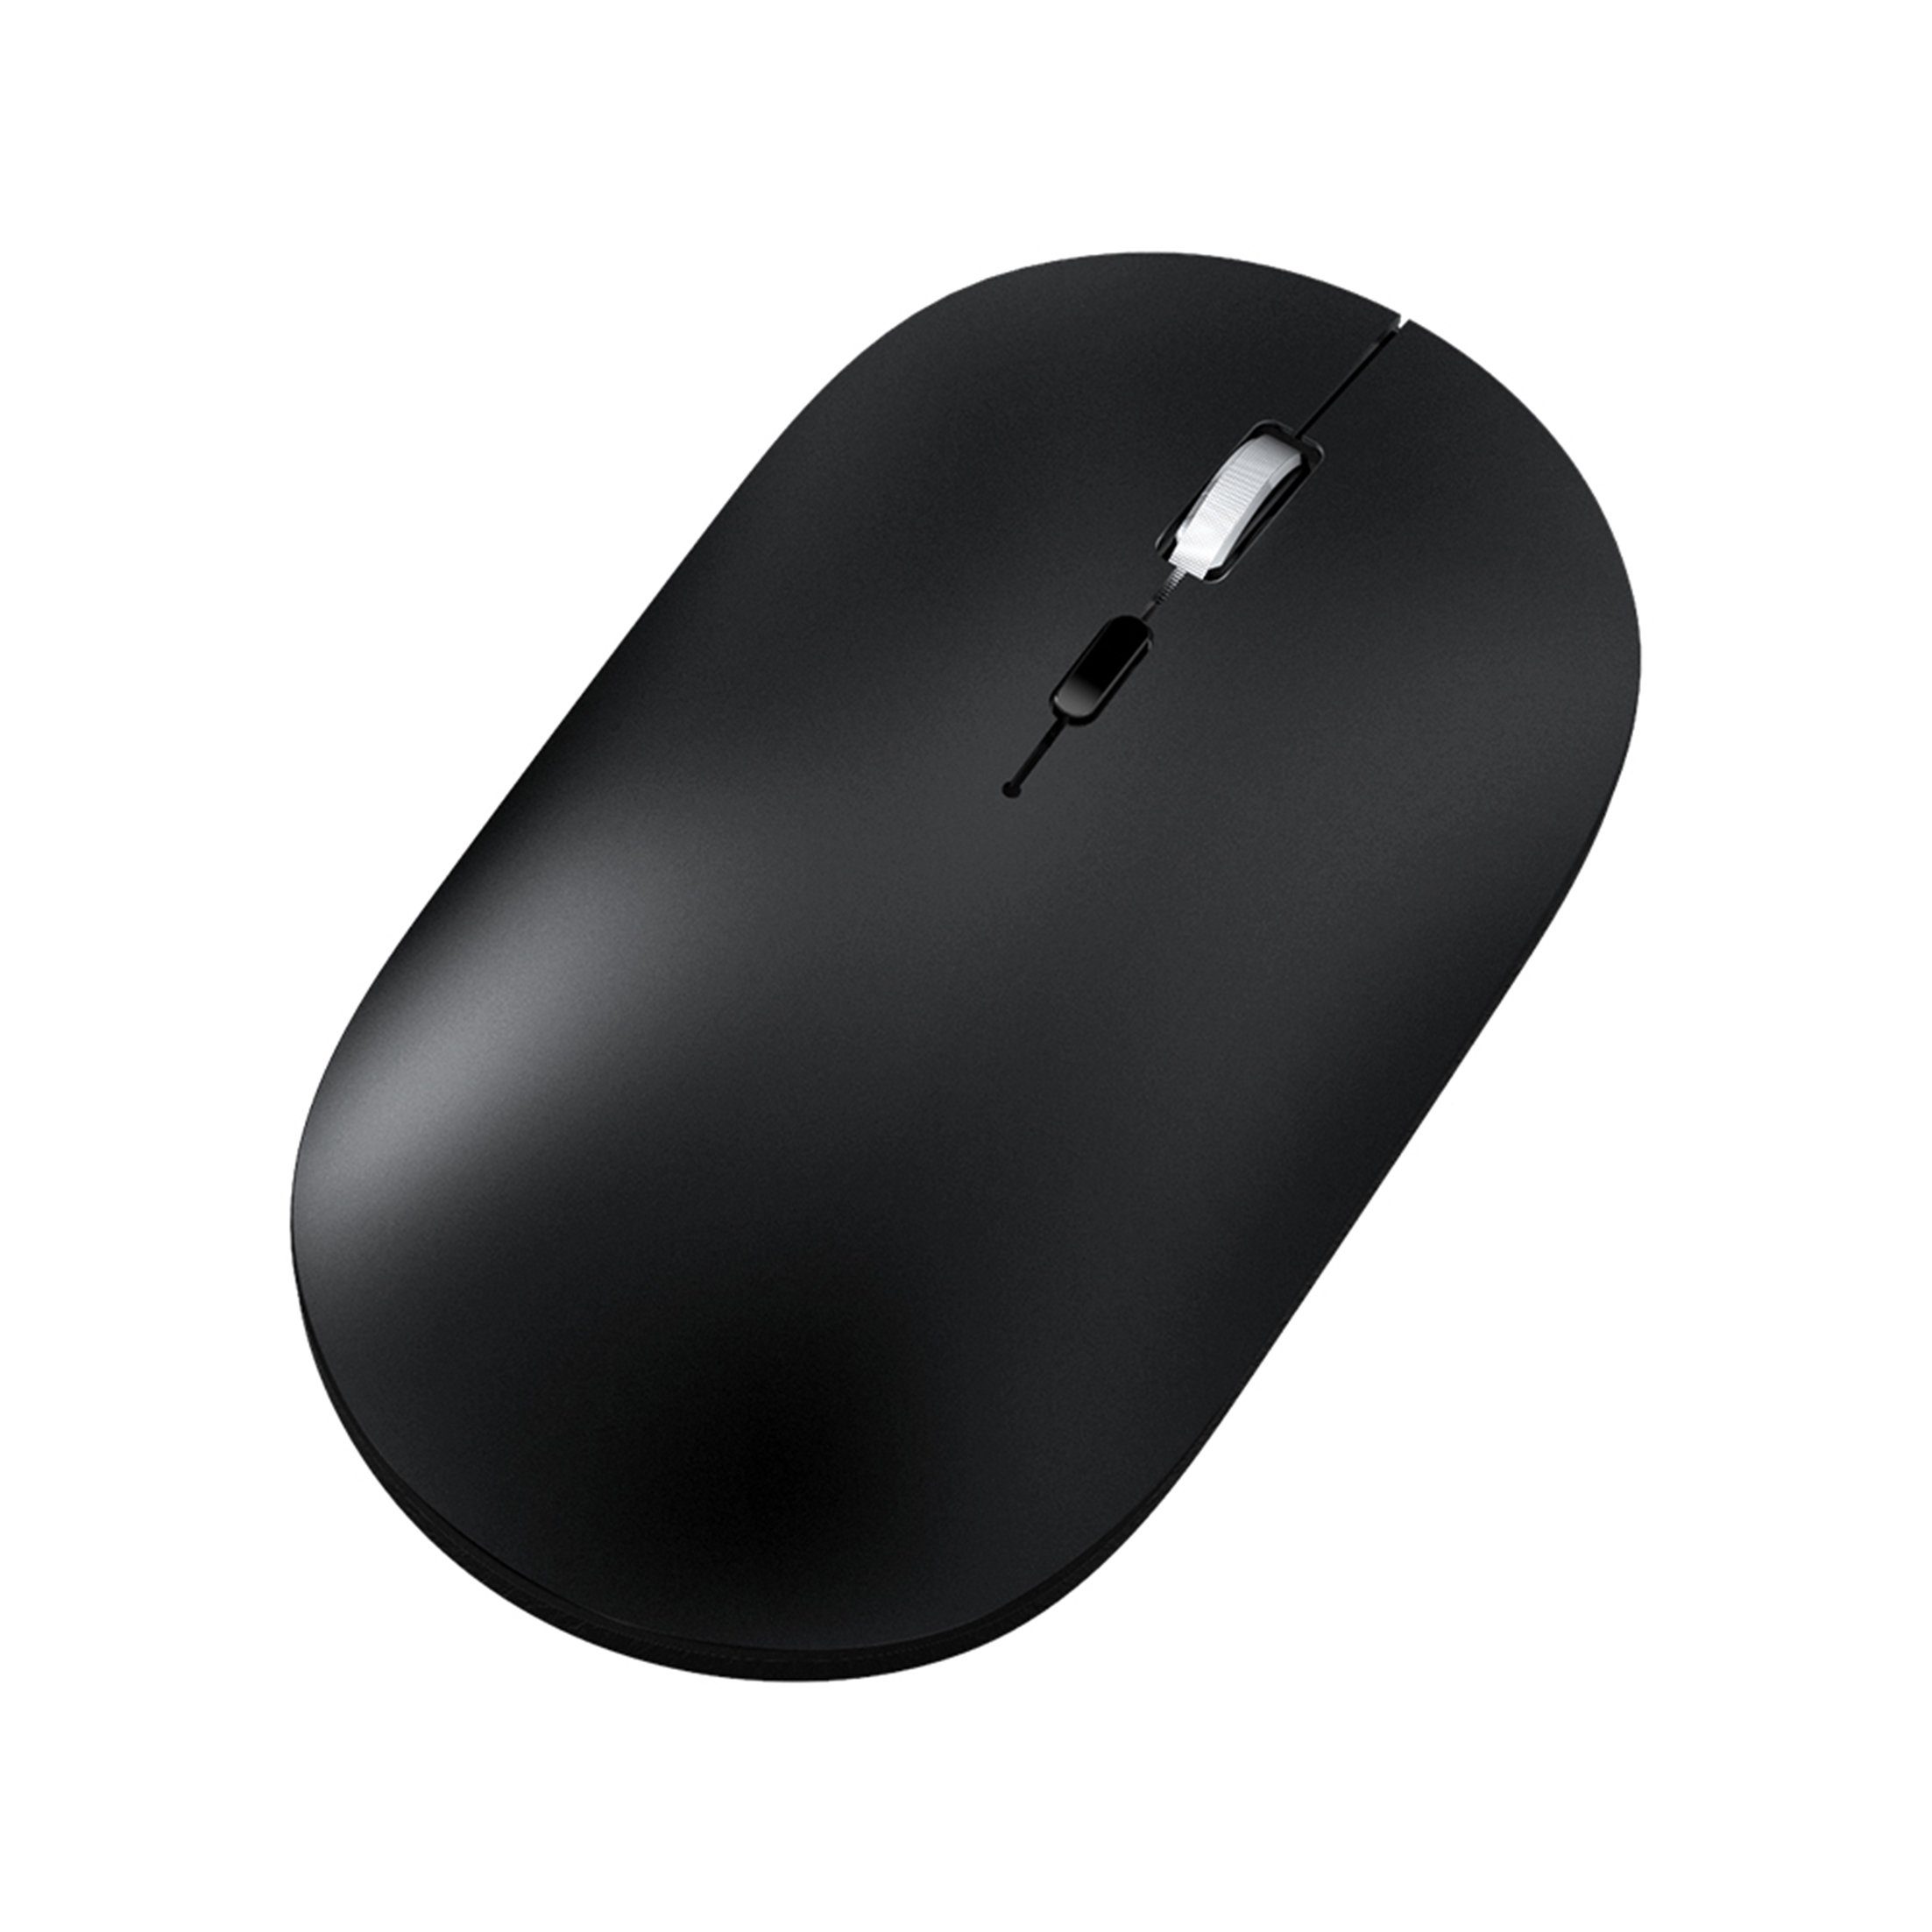 Diida 2.4G Kabellose Maus,Bluetooth-Maus,für MacBook/PC/Laptop Maus (3 DPI-Stufen einstellbar,Stumm)